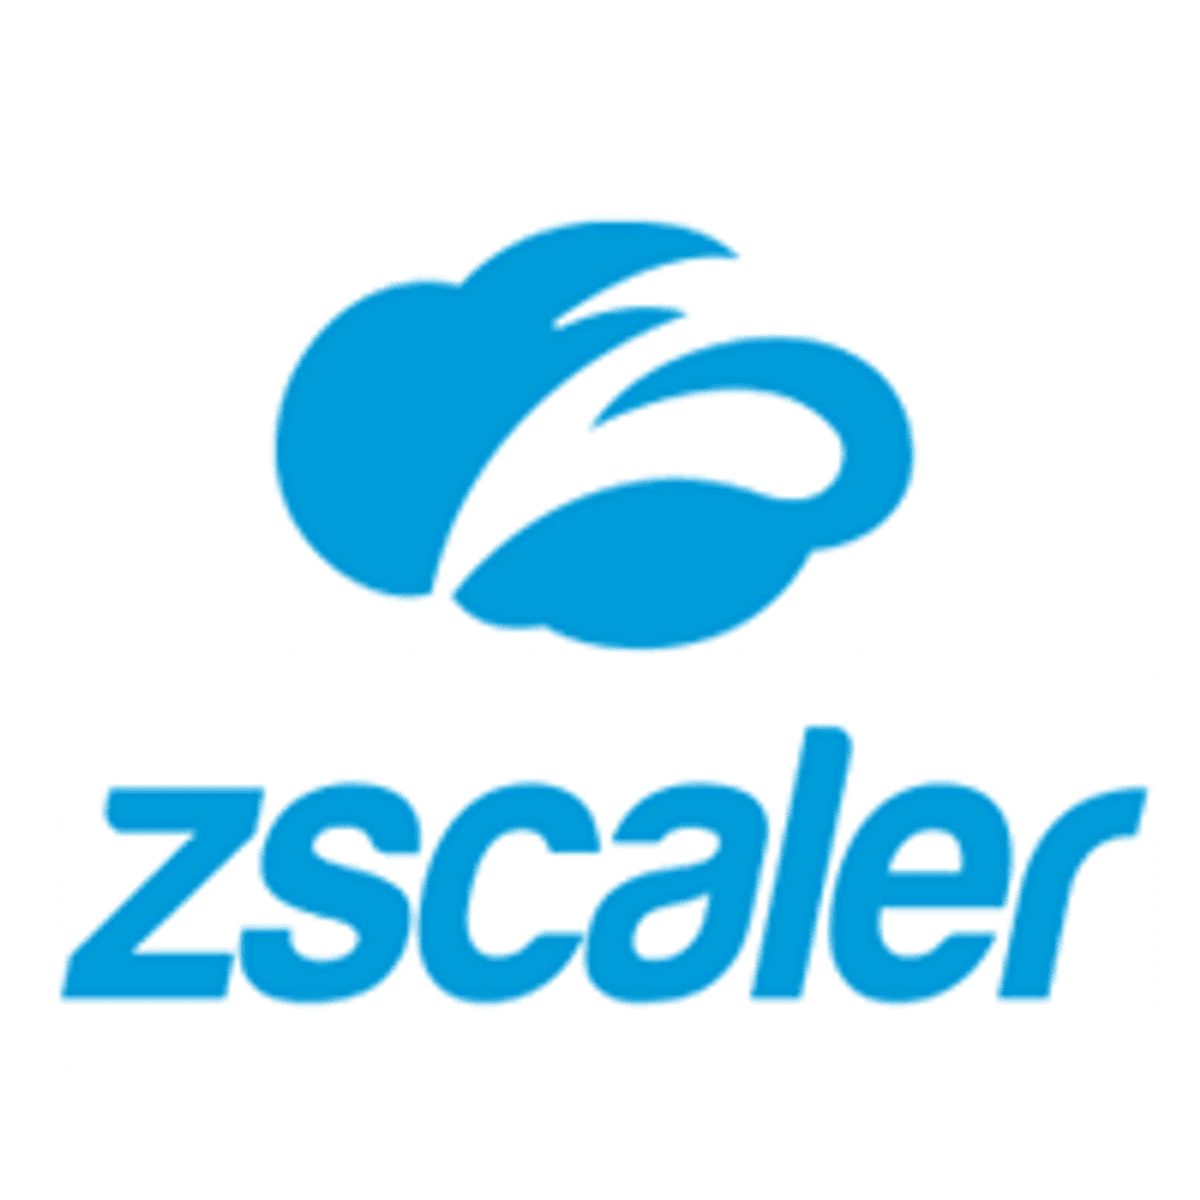 Zscaler-cloud nu beschikbaar vanuit 150 datacenters wereldwijd image